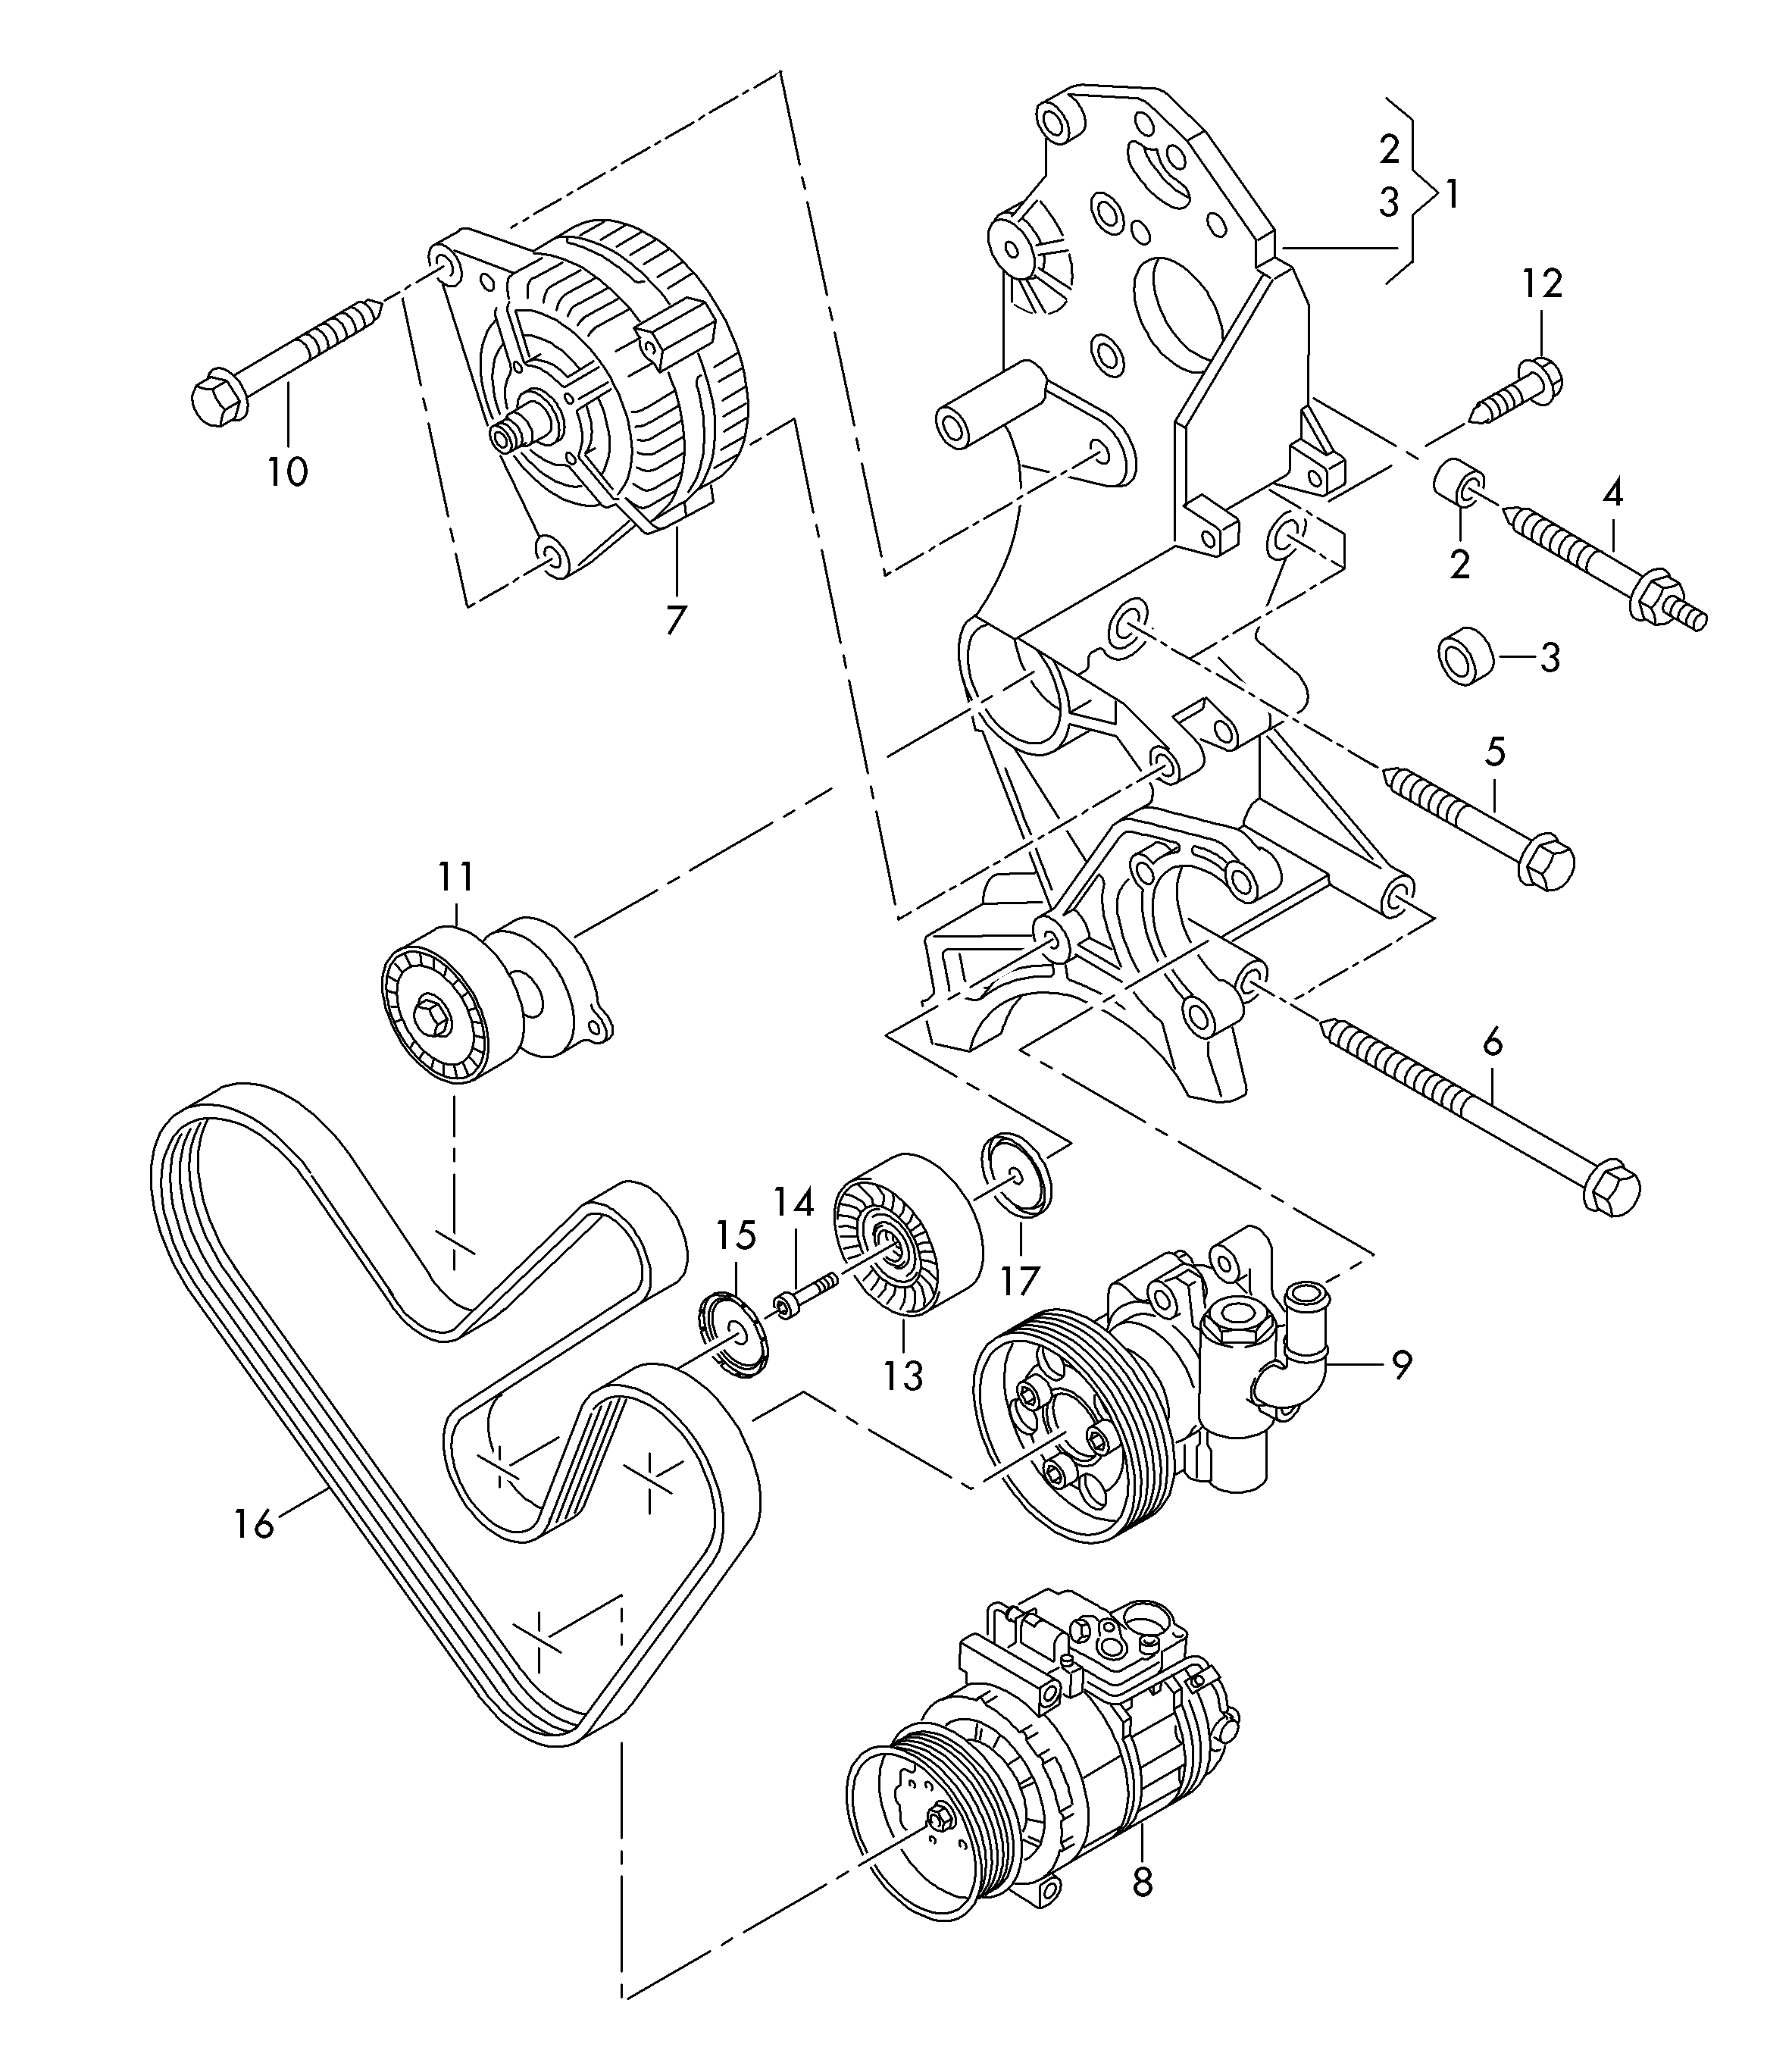 elementy polaczeniowe i
mocujace alternatora - Transporter(TR)  